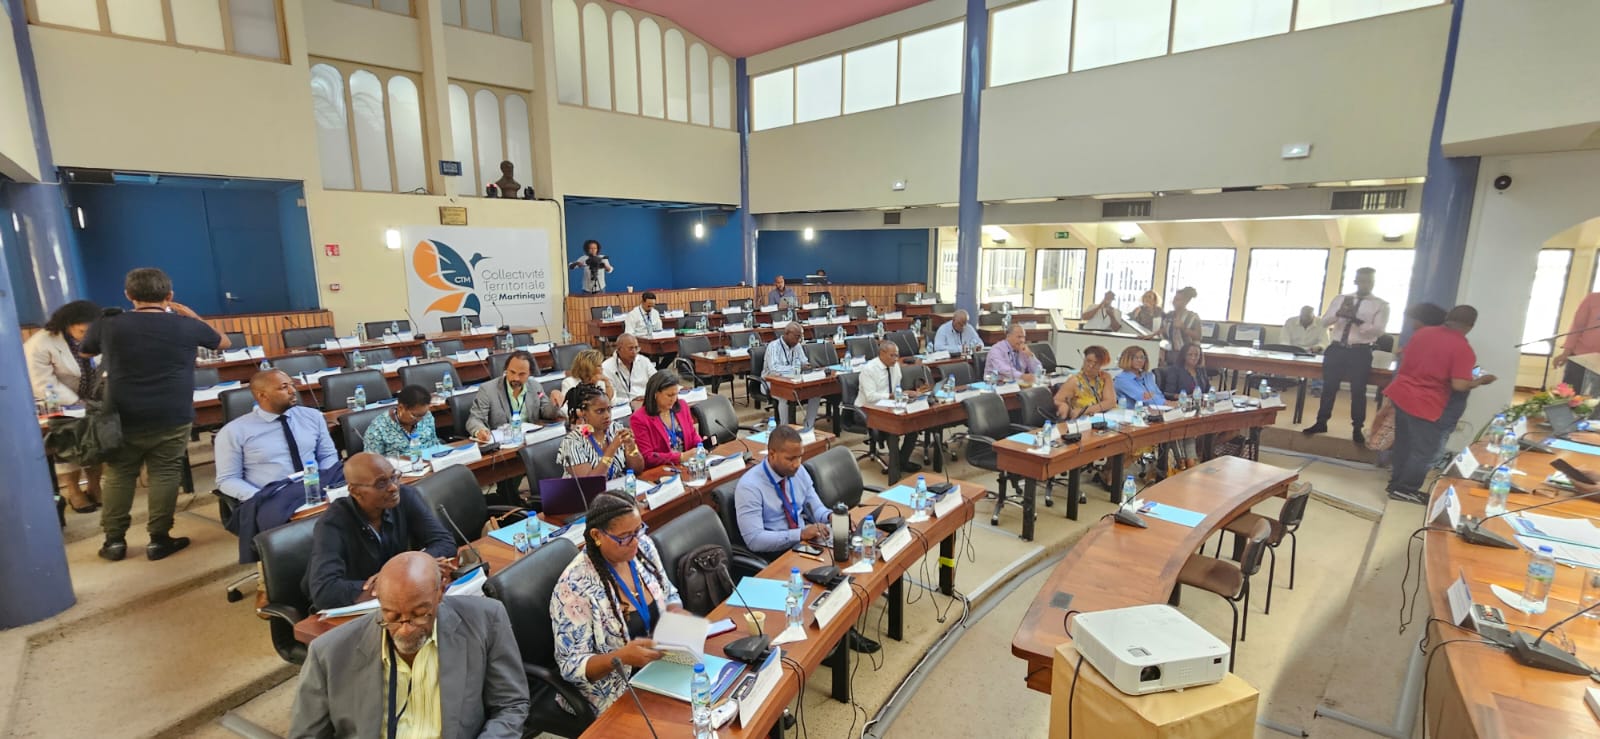     [Direct] Suivez la cinquième réunion du congrès des élus de Martinique

